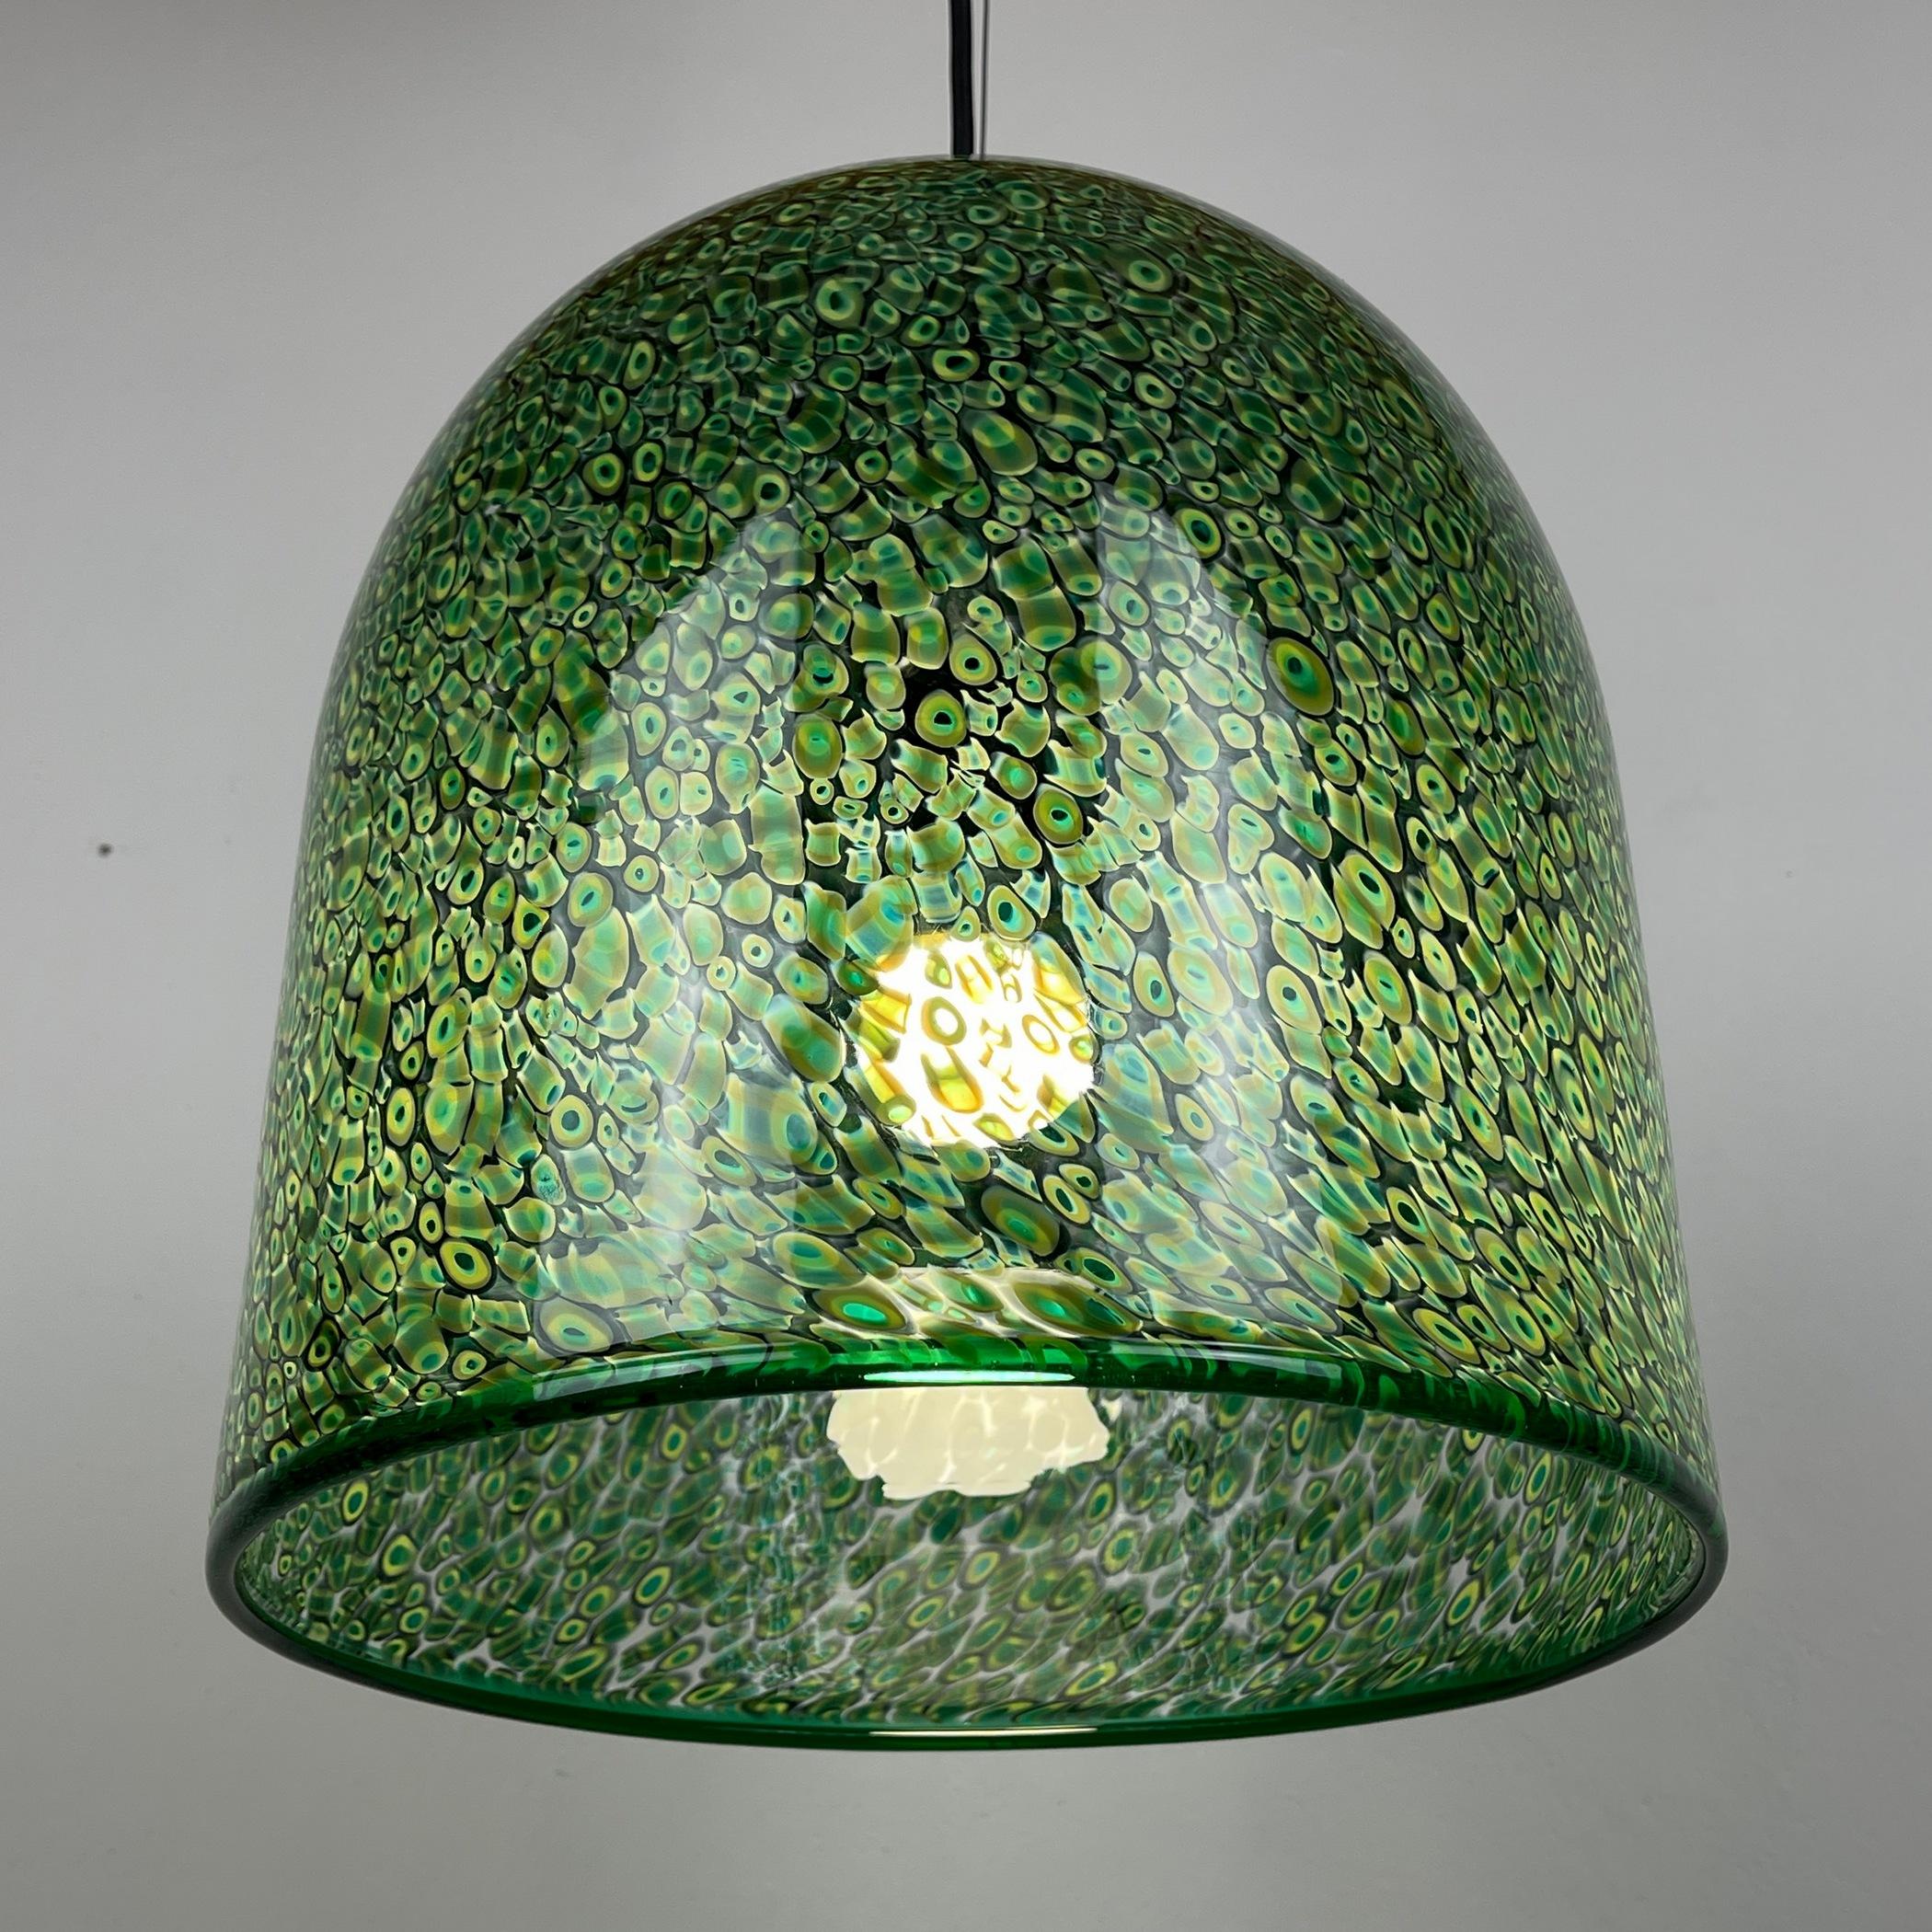 20th Century  Green murano pendant lamp Neverrino by Gae Aulenti for Vistosi Italy 1976s